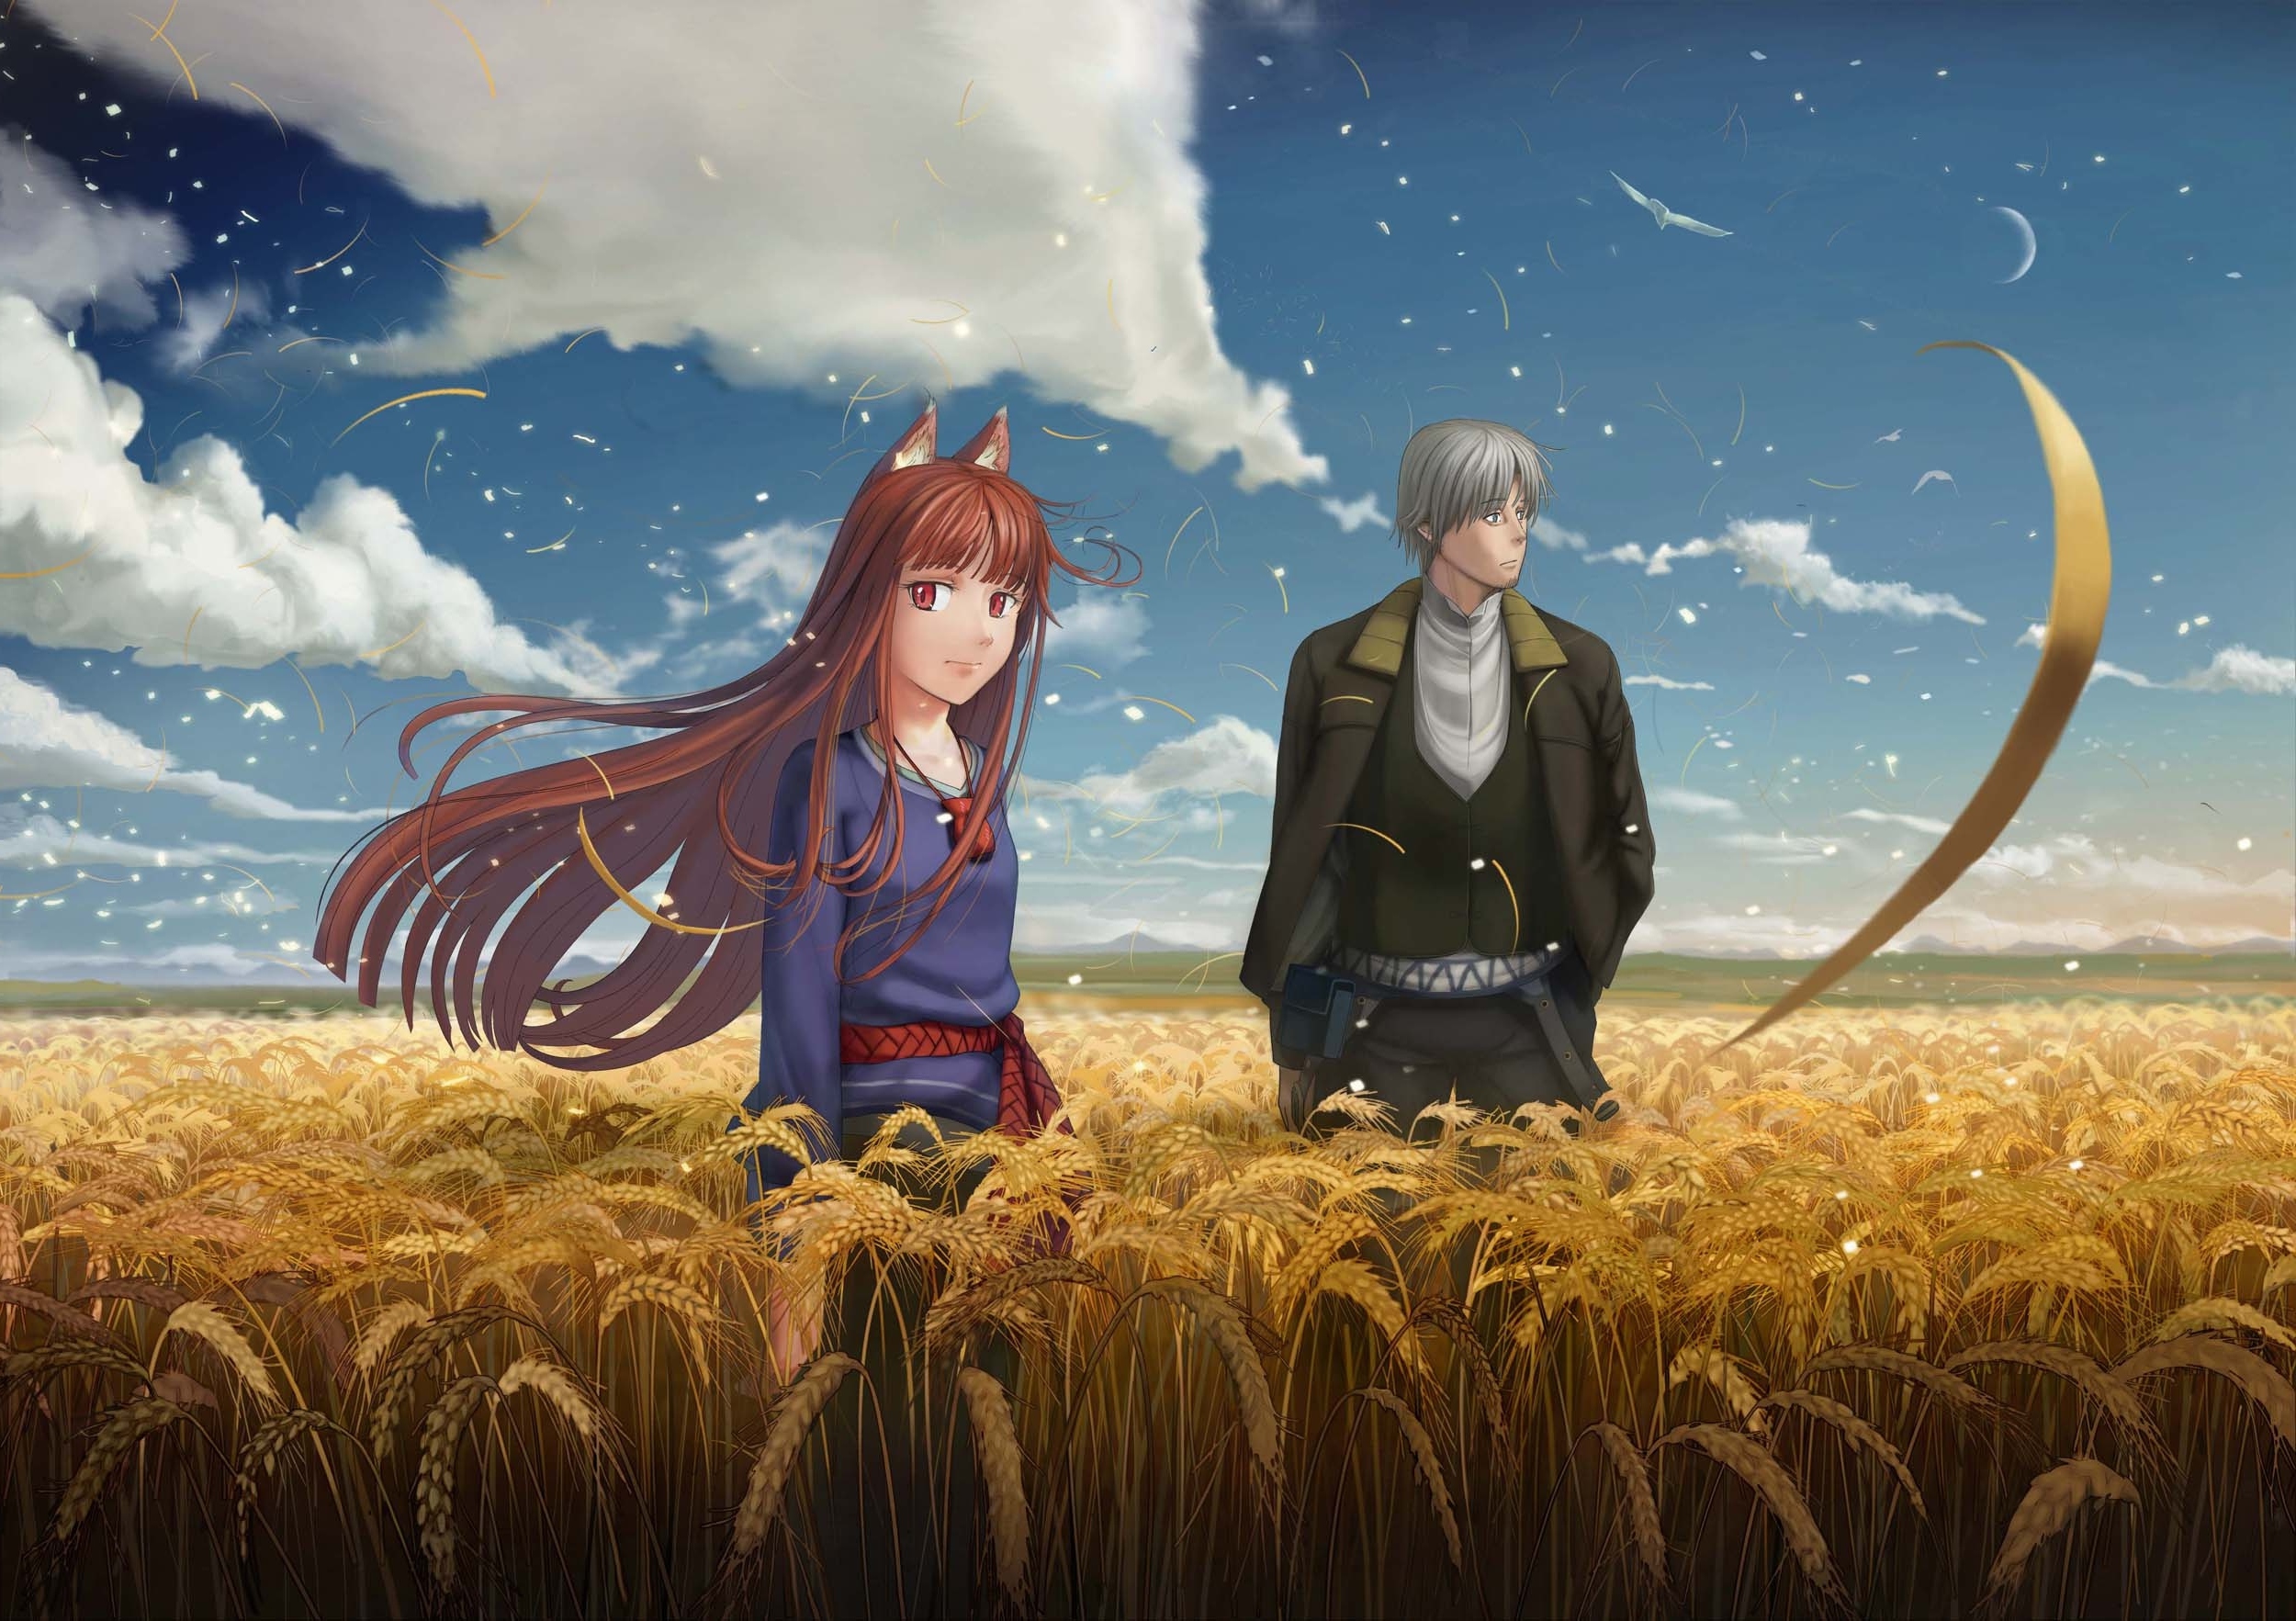 Foxgirl in wheat field by Krilatiy1 on DeviantArt